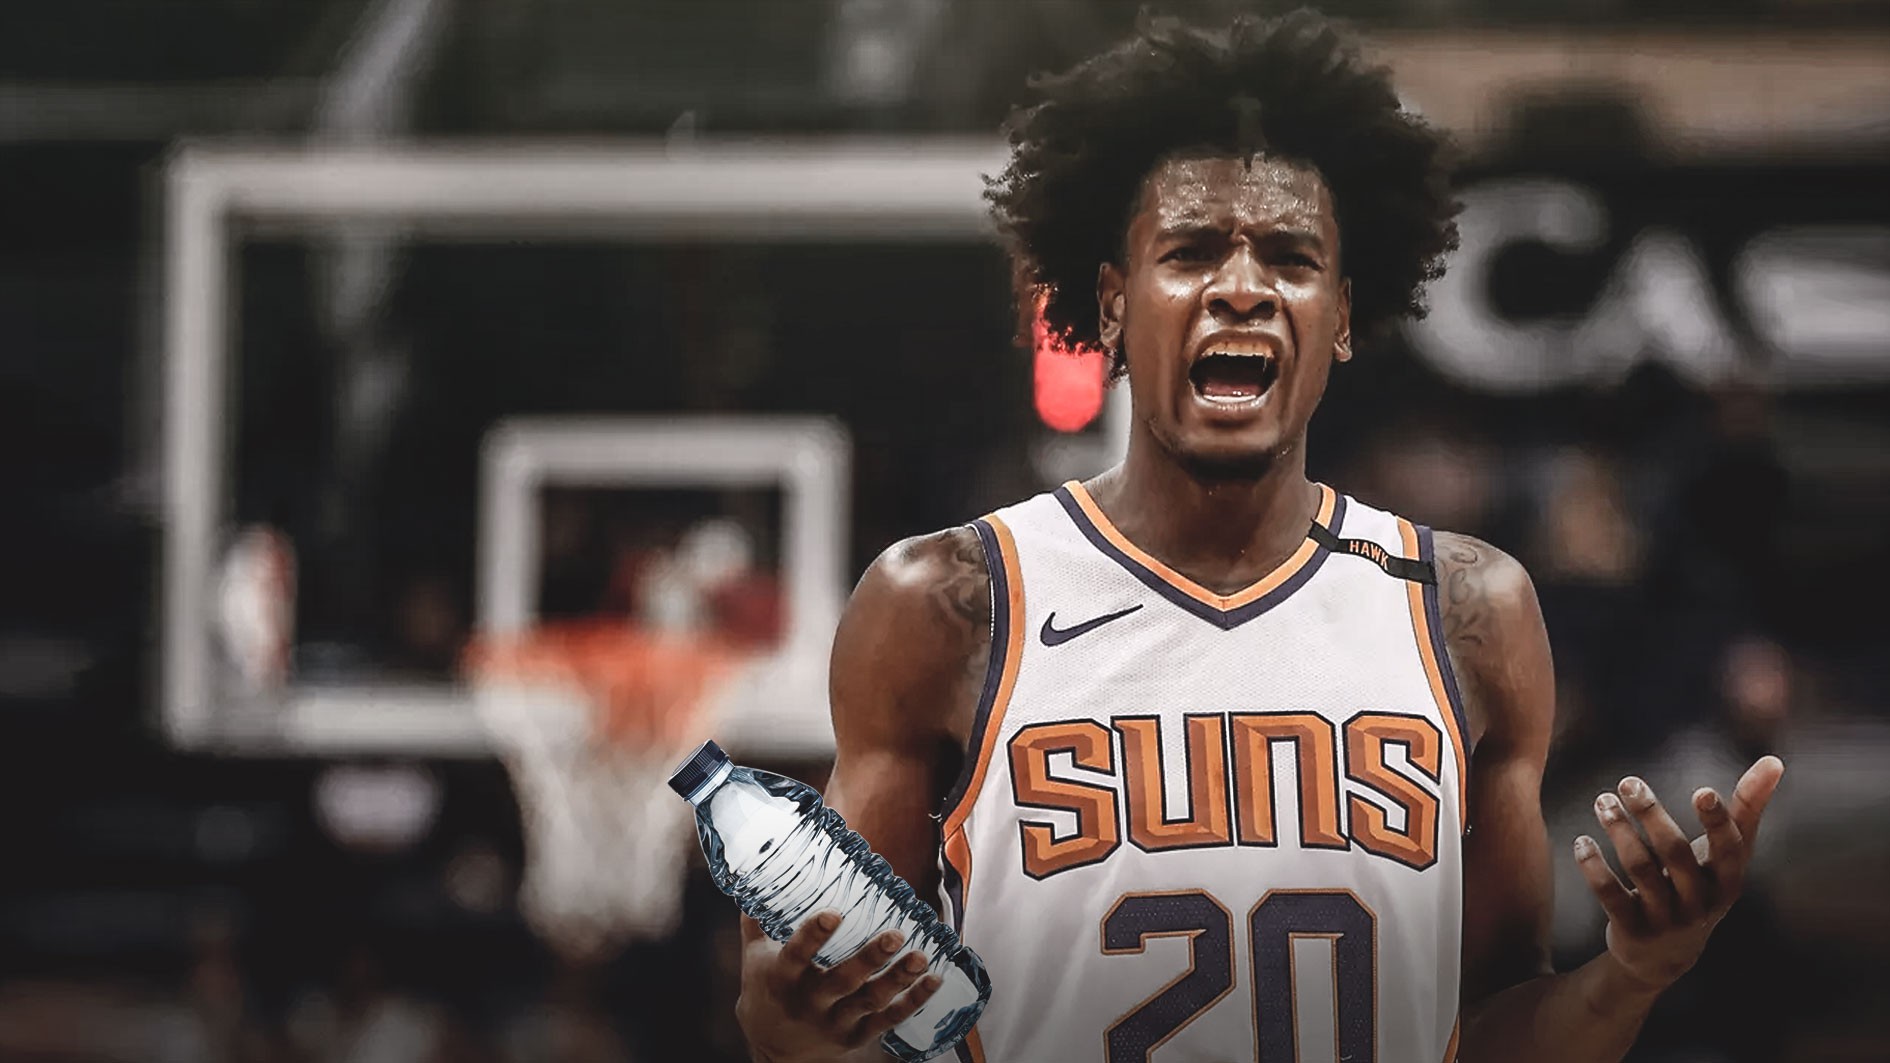 Hóa ra ngôi sao Phoenix Suns lại là nhân chứng nhí trong thảm họa ẩu đả lớn nhất NBA - Ảnh 2.